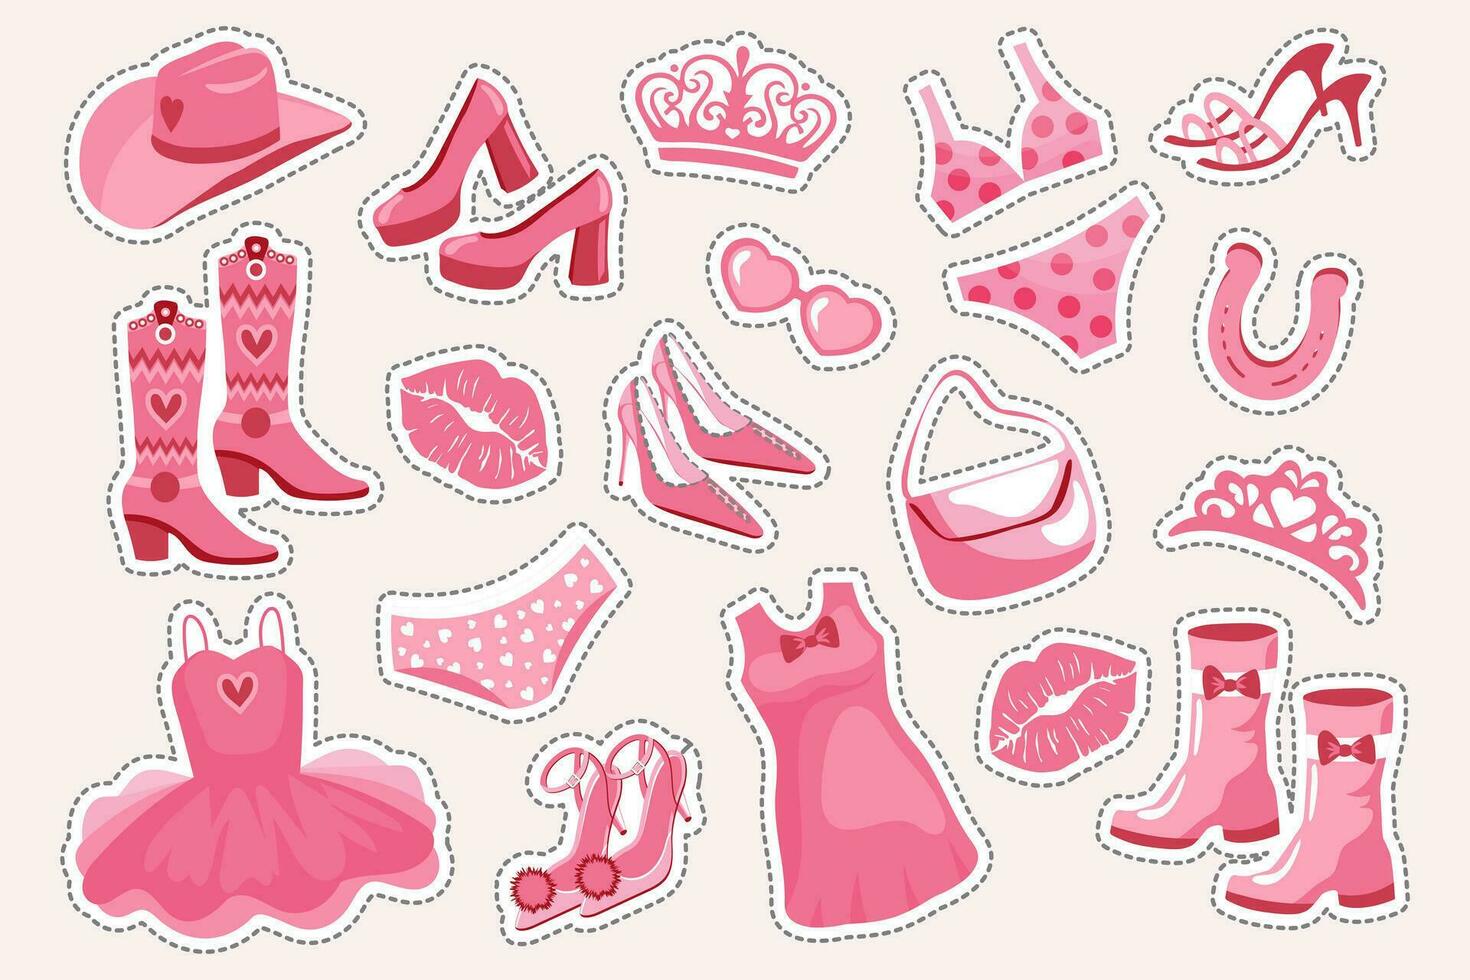 Prinzessin Aufkleber Satz. Rosa Mode Satz, Zubehör und Kleider zum ein Rosa Puppe. Krone, Kleid, Schuhe, Cowboy Hut, Stiefel, Tasche, Brille. Vektor